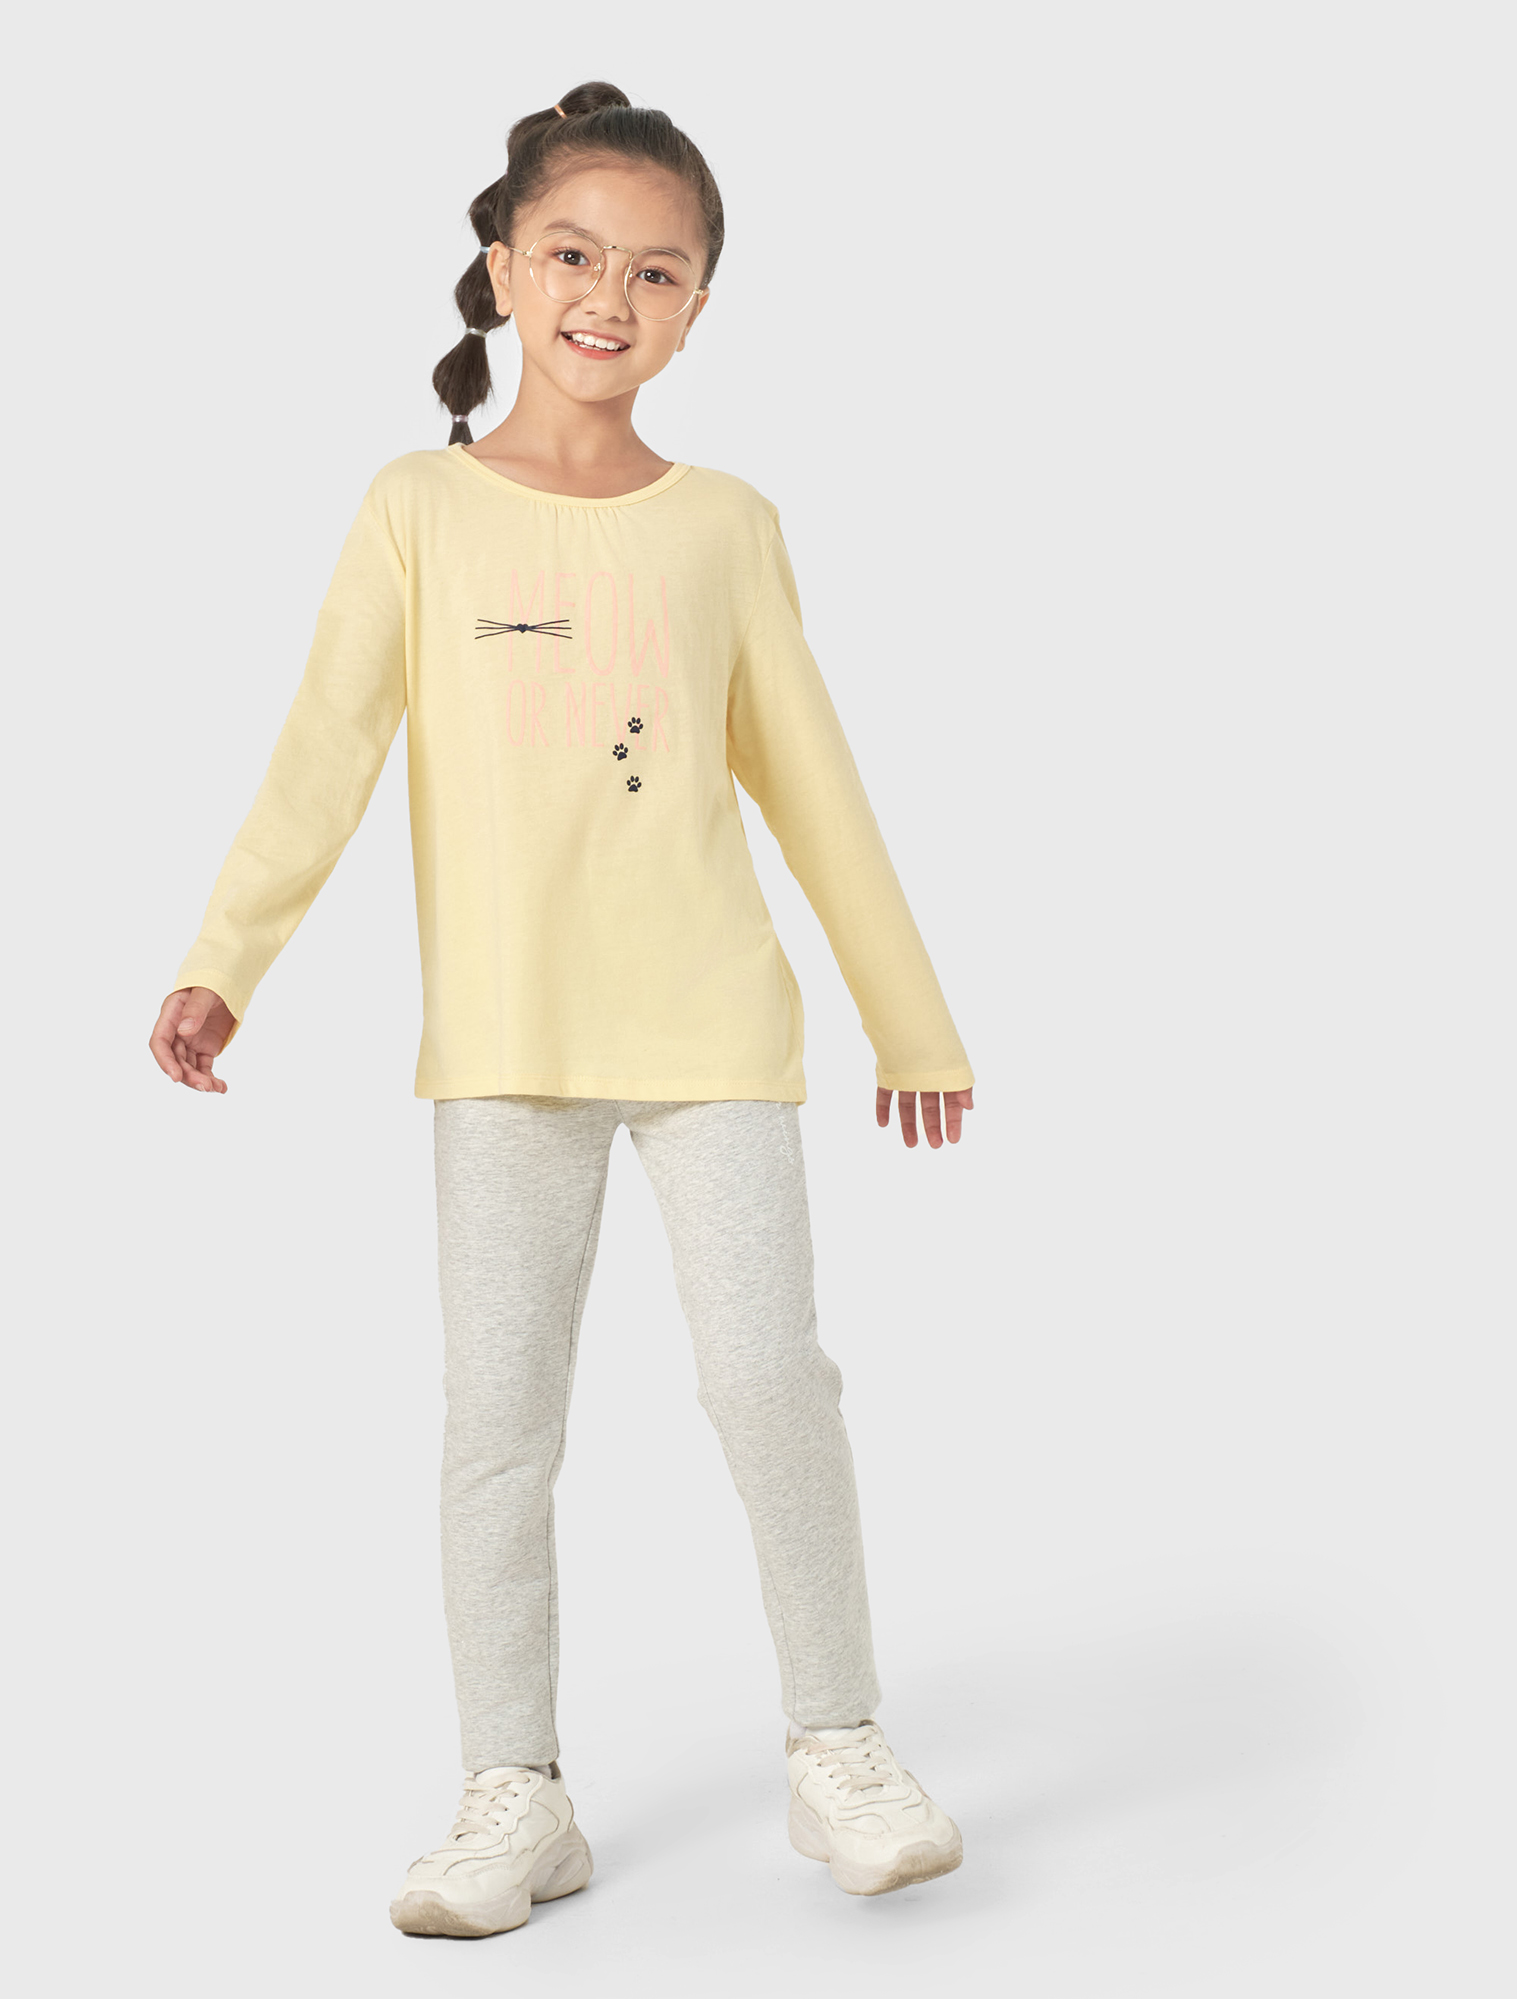 Pack 2 áo mặc nhà bé gái có hình in CANIFA 100% cotton, cổ tròn tay dài, mix 2 áo khác màu 1LA22W003